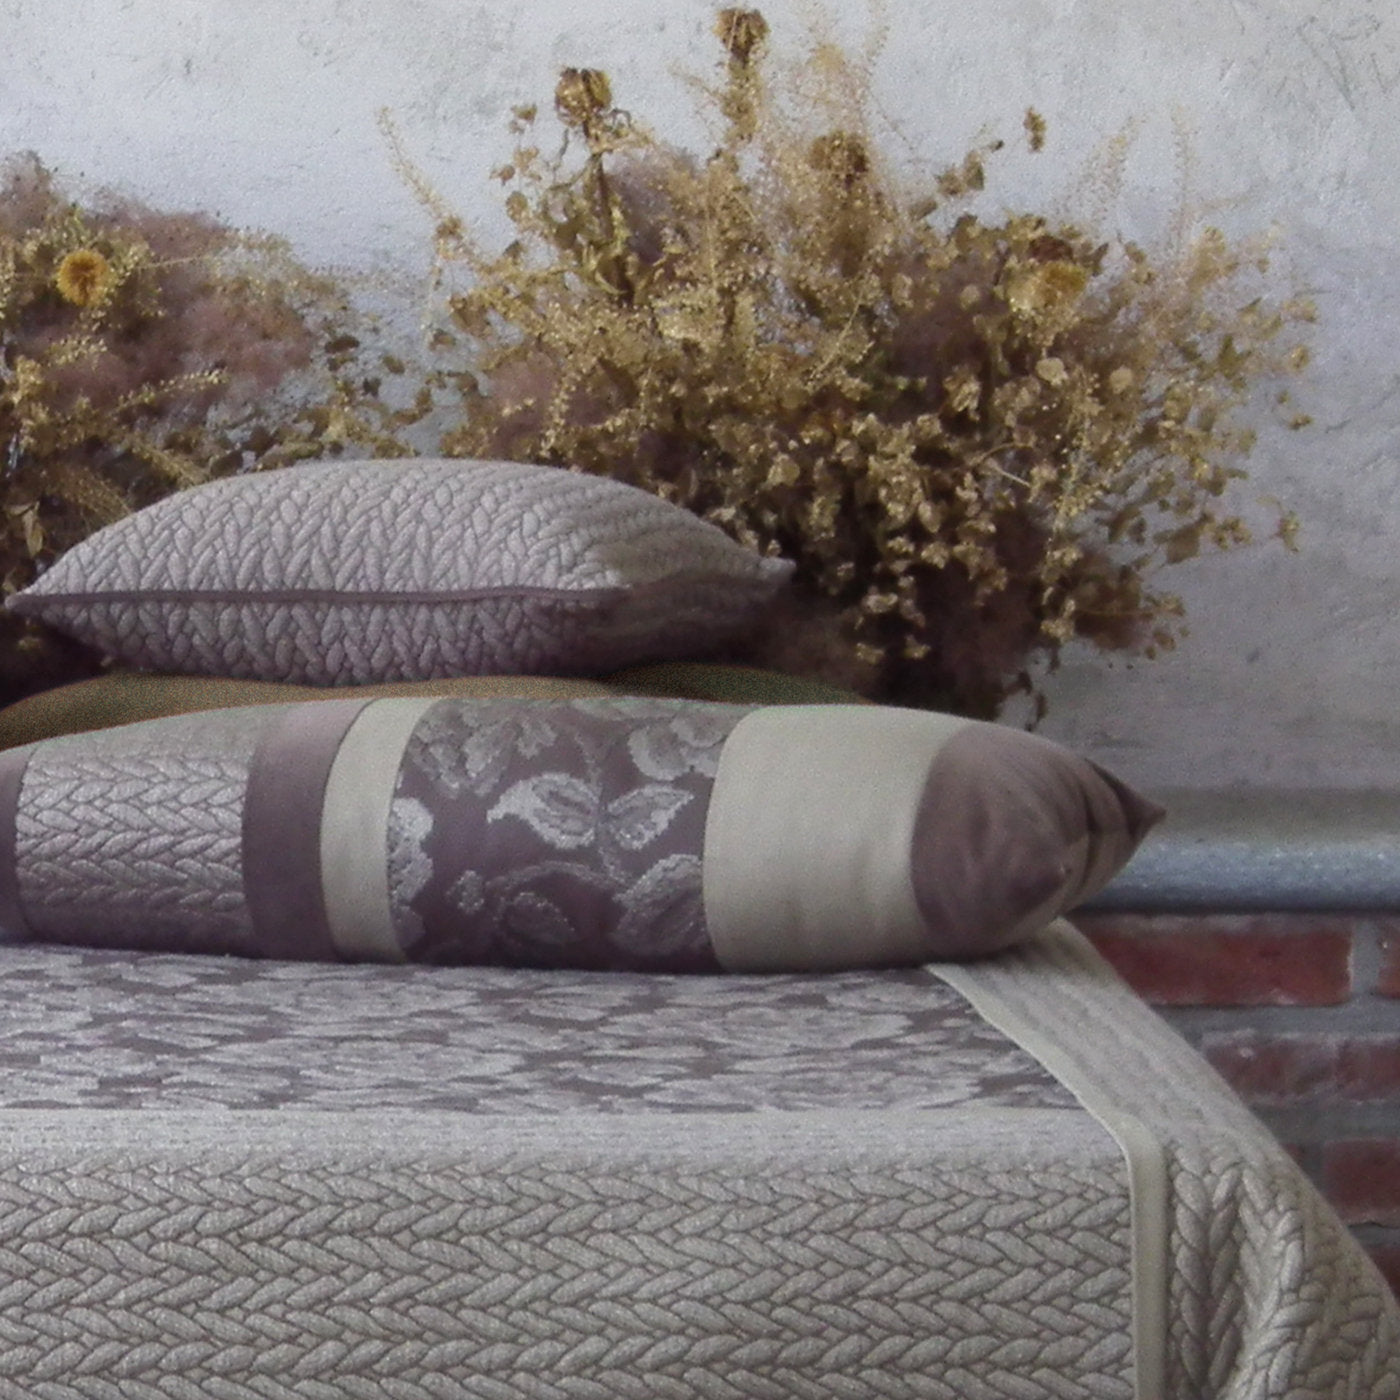 Beige Carrè Cushion in Tricot Jacquard Fabric - Alternative view 2